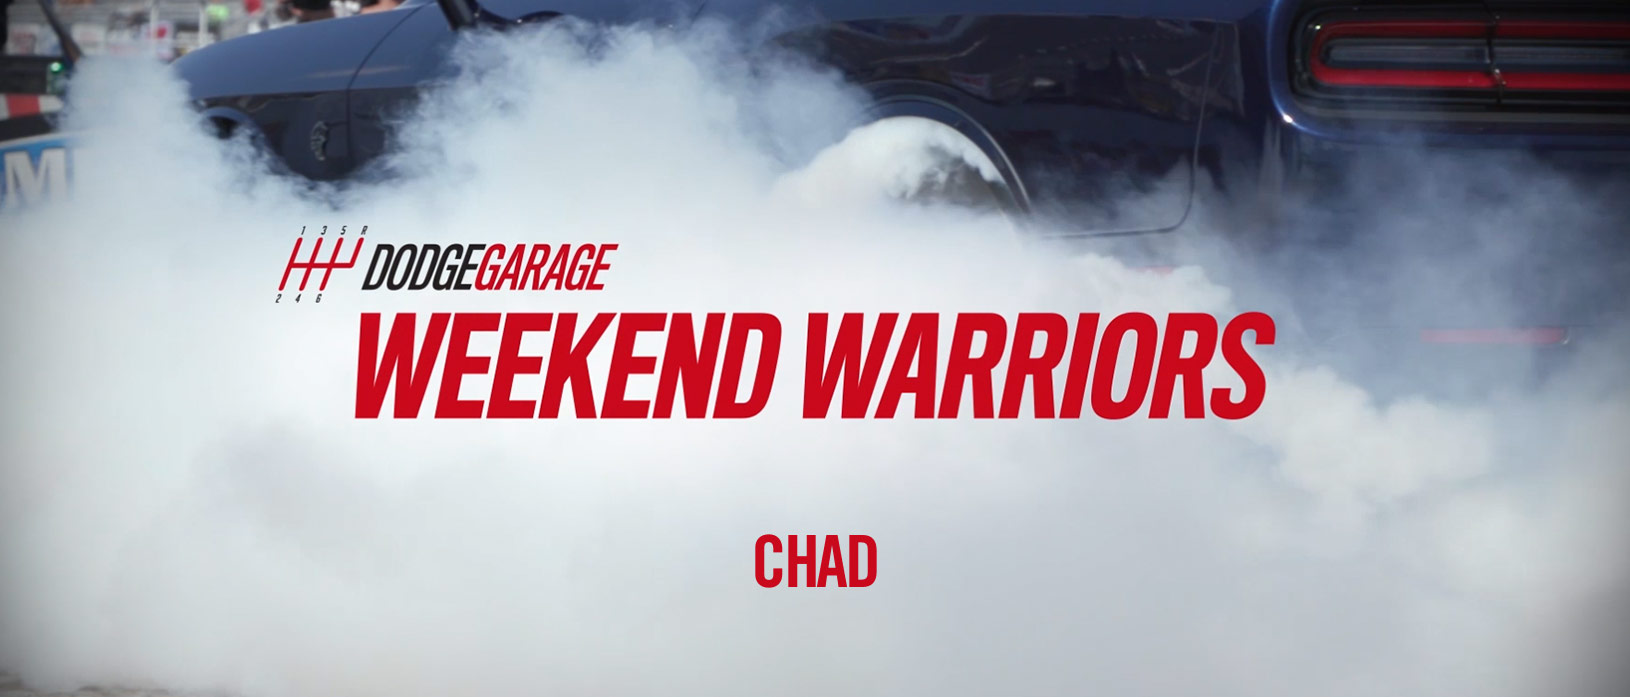 Weekend Warriors Chad